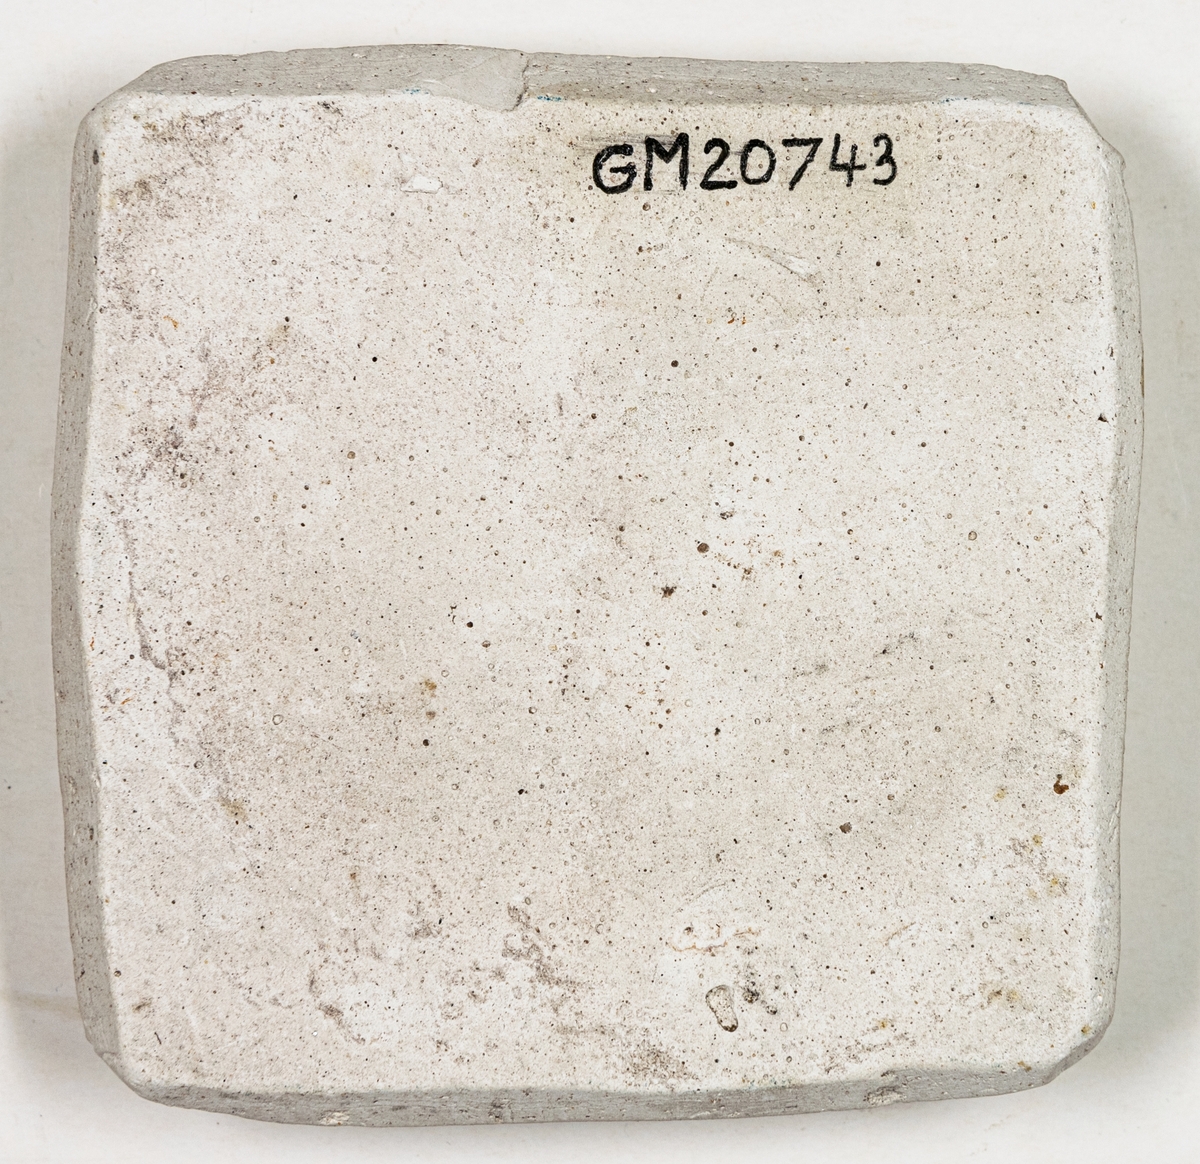 Gjutform av gips. Platt, närmast kvadratisk med fyrsidig bladrosett i omvänd relief på ena sidan. Formytan gråbrun.